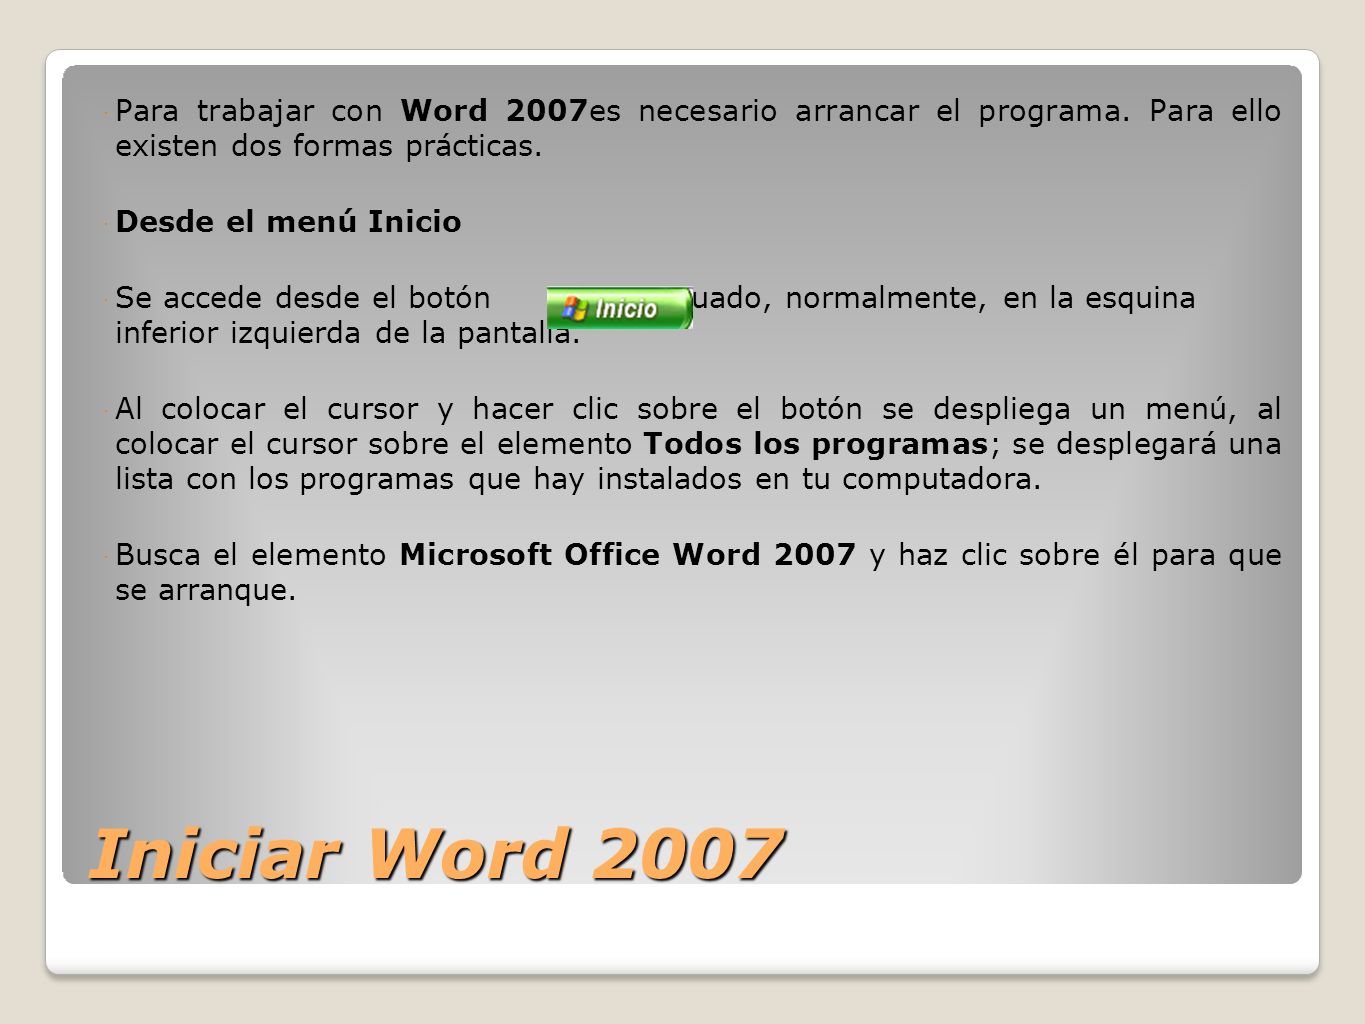 Para trabajar con Word 2007es necesario arrancar el programa